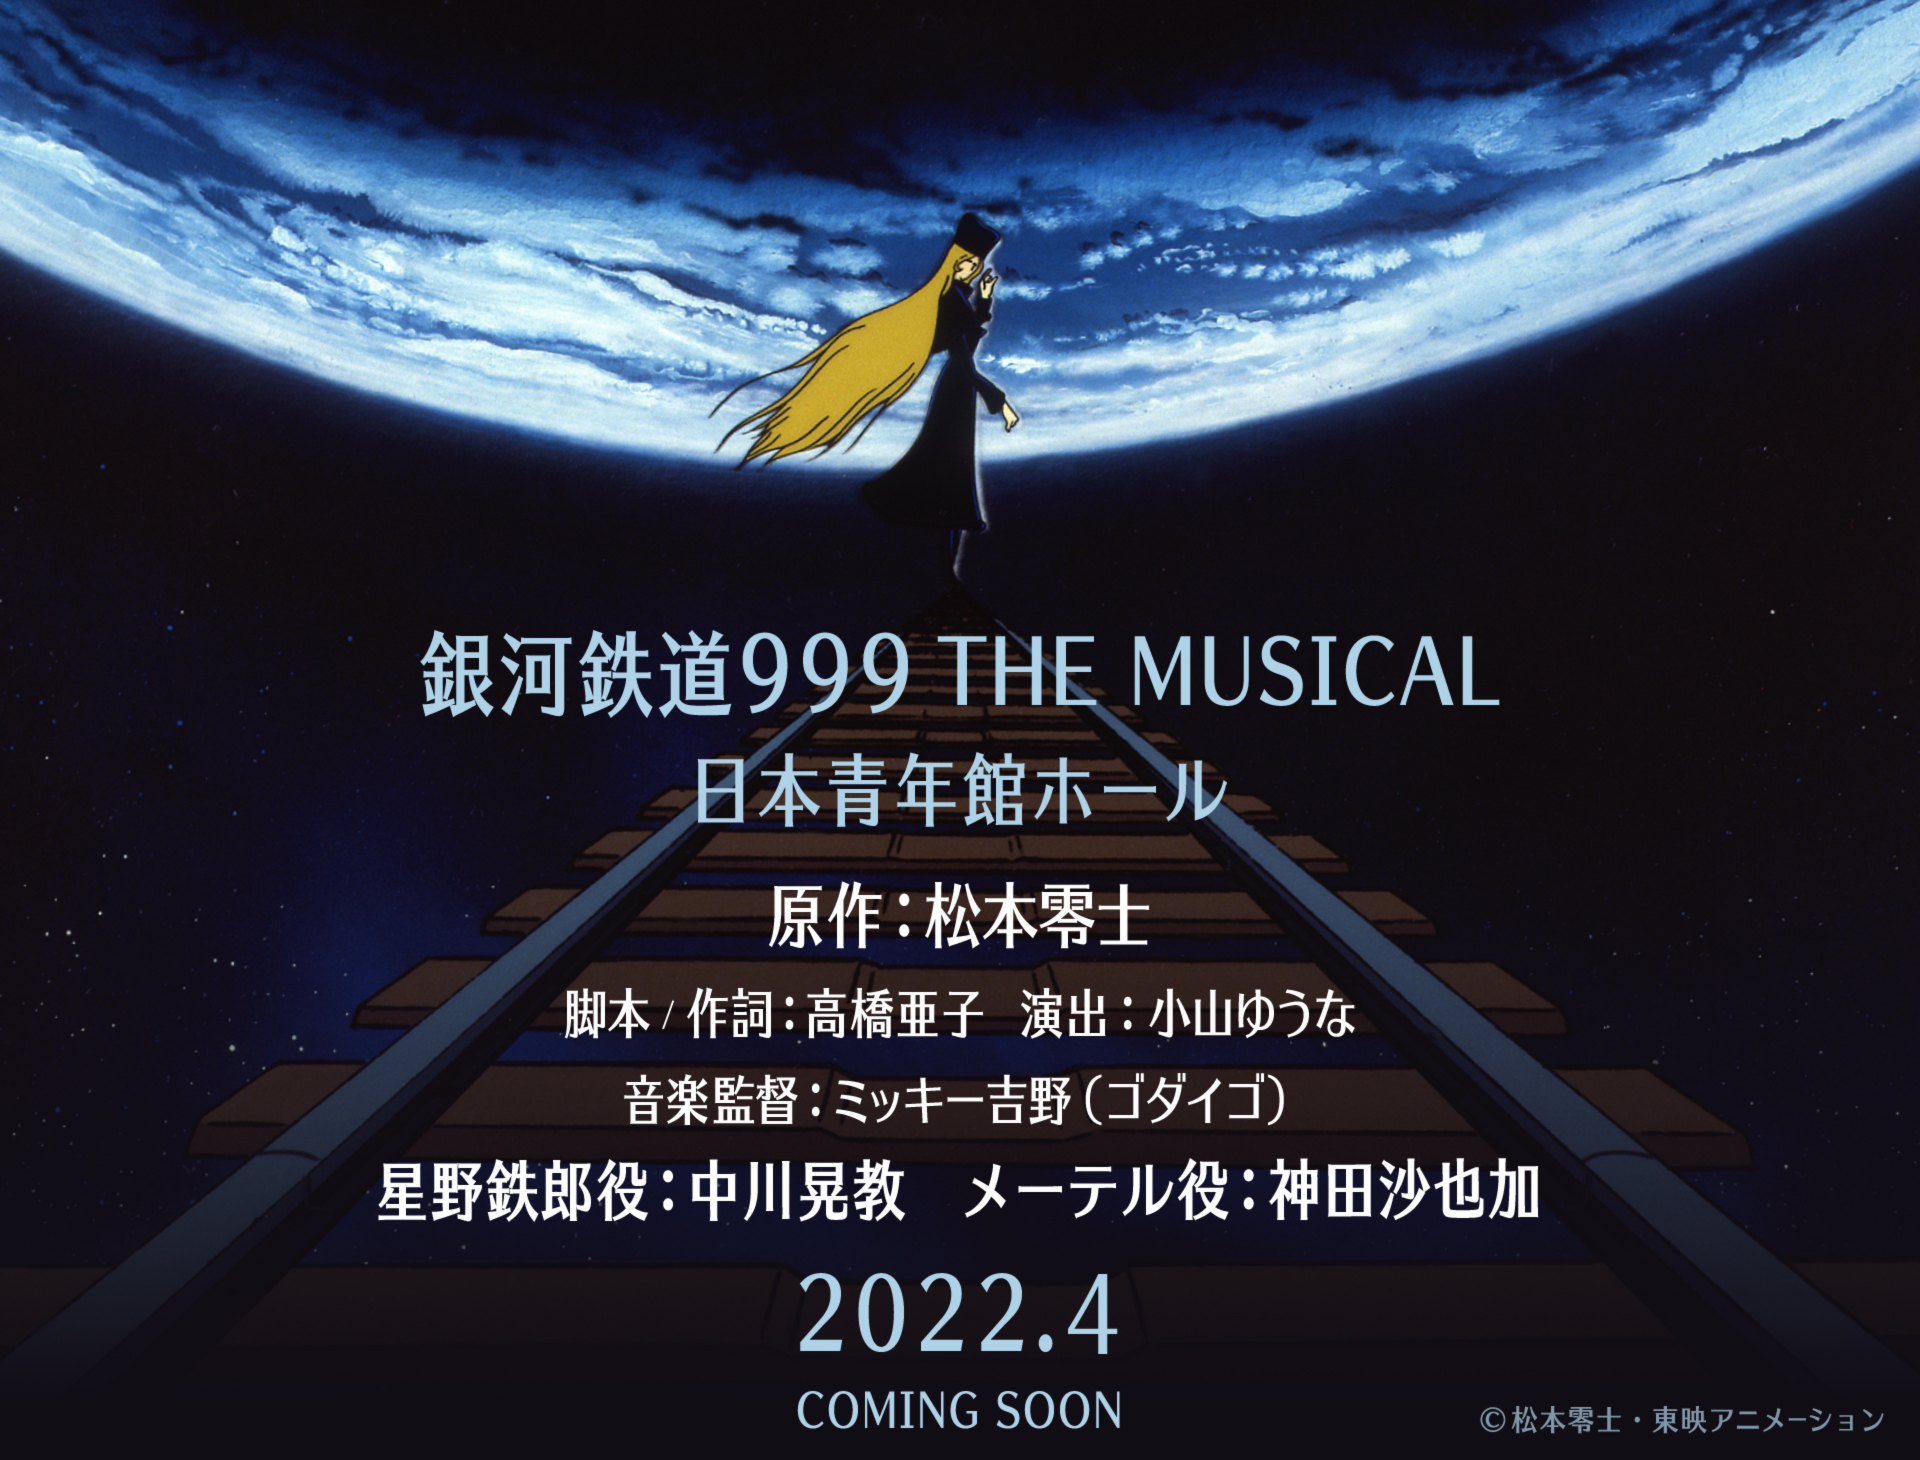 『銀河鉄道999 THE MUSICAL』